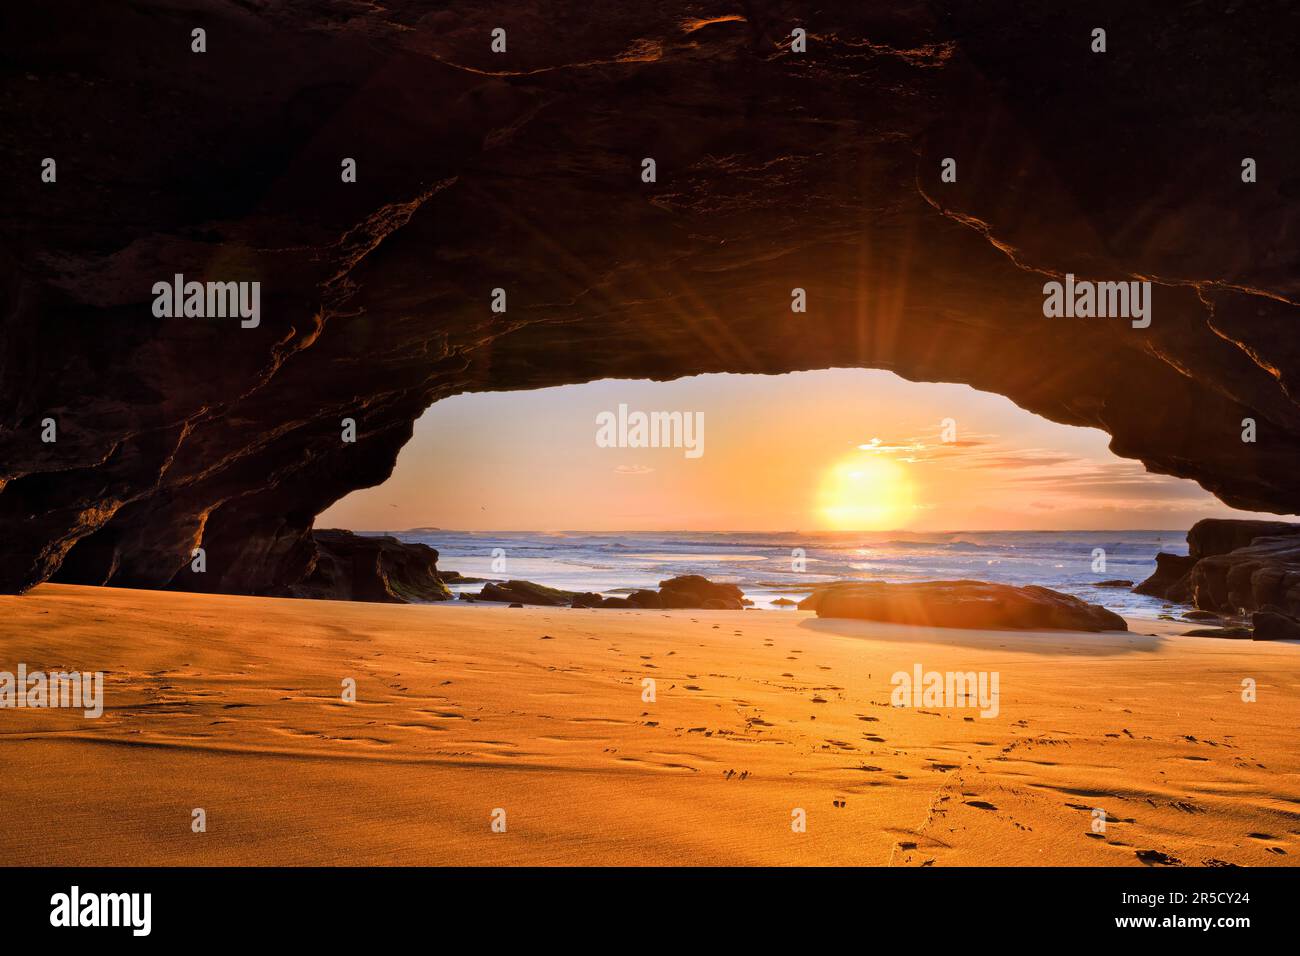 Im Inneren der malerischen Meereshöhle an der Pazifikküste Australiens bei Caves Beach Town mit aufgehender Sonne. Stockfoto